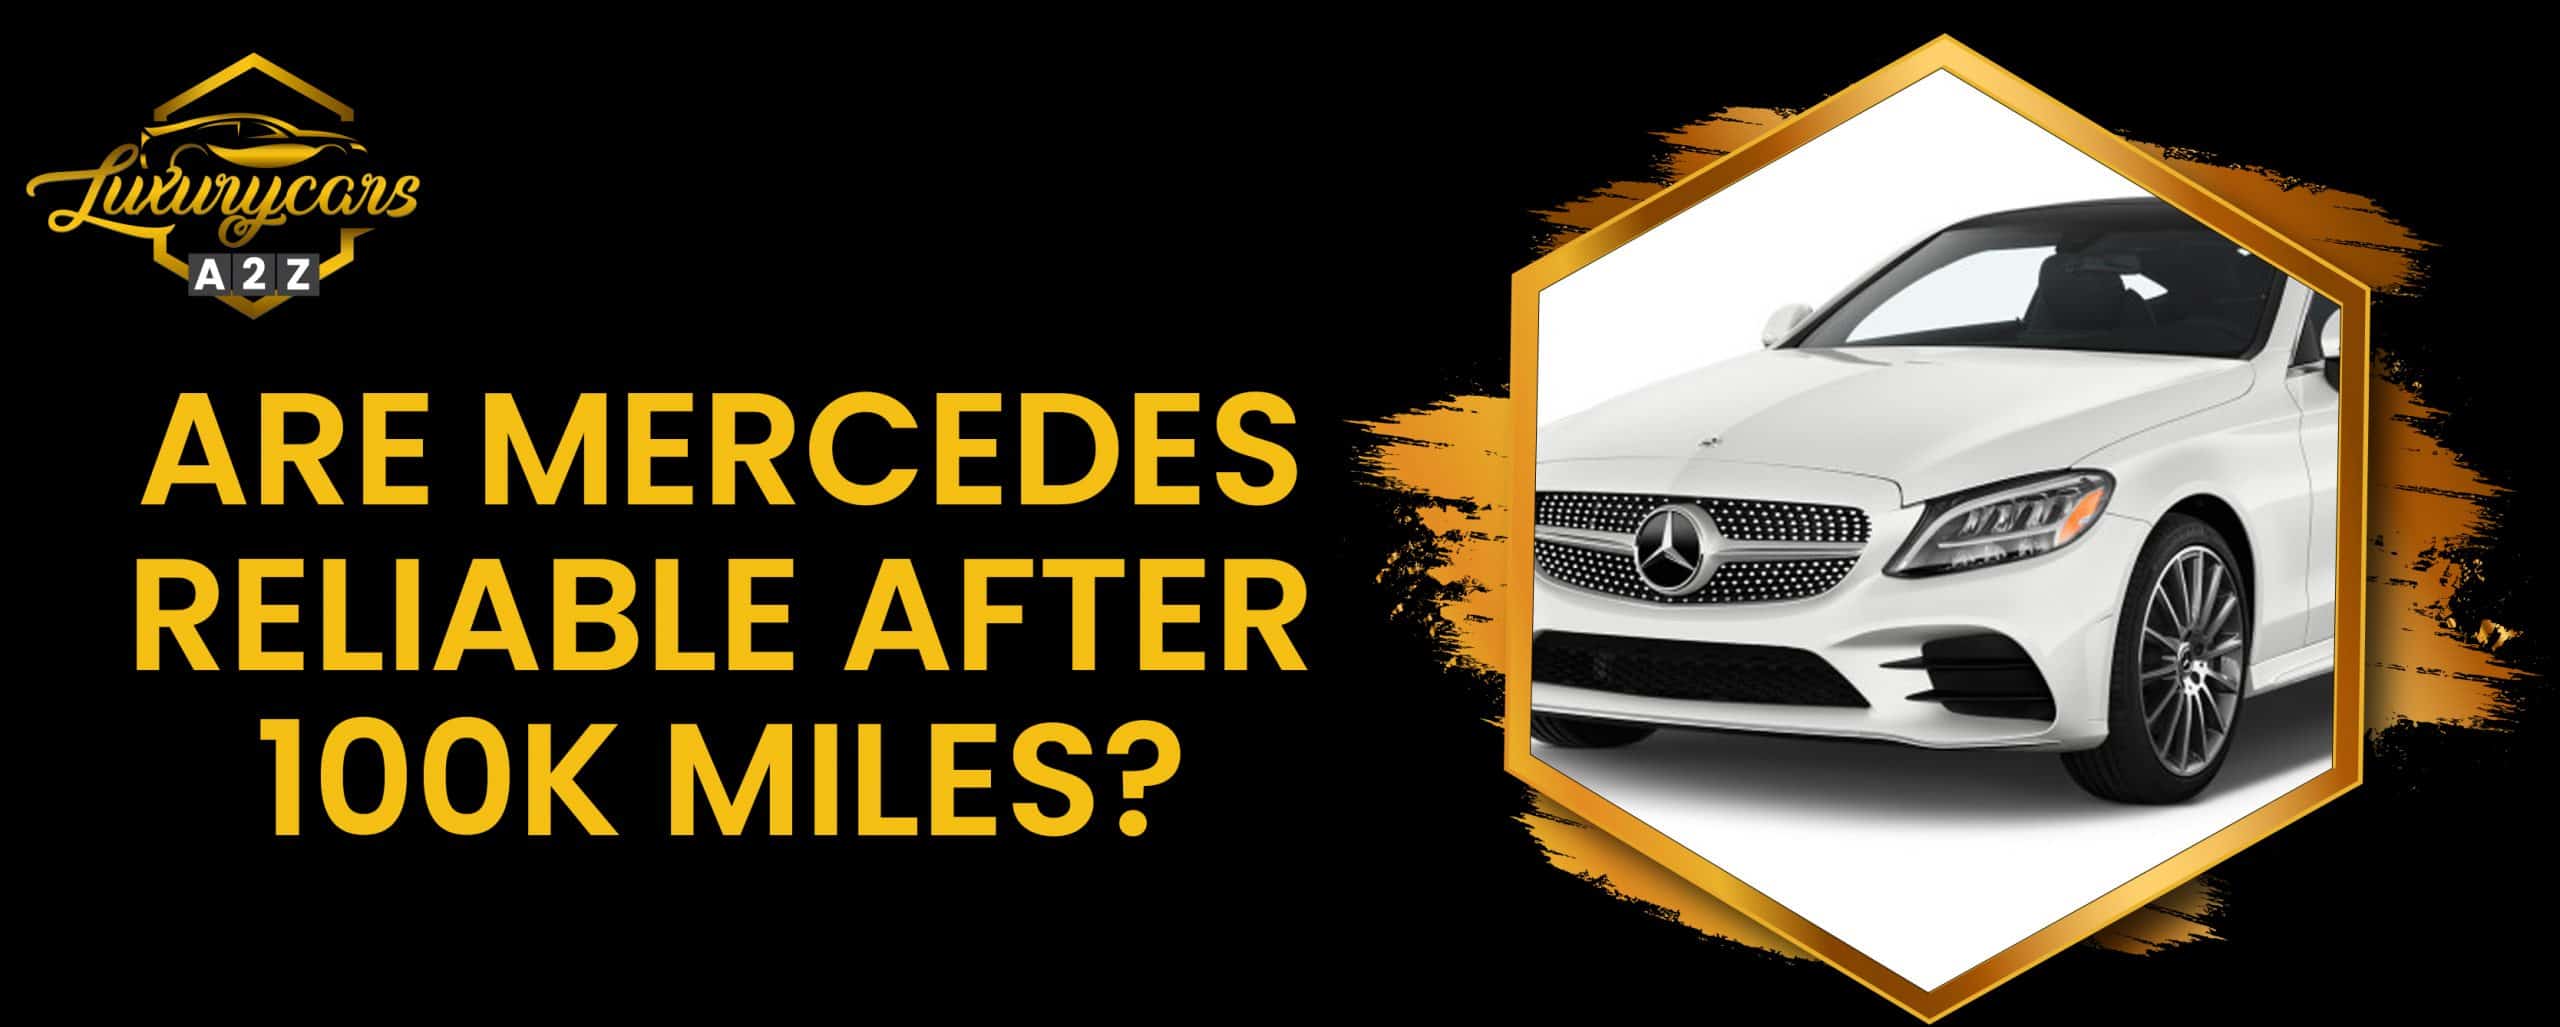 Les voitures Mercedes sont-elles fiables après 100 km ?